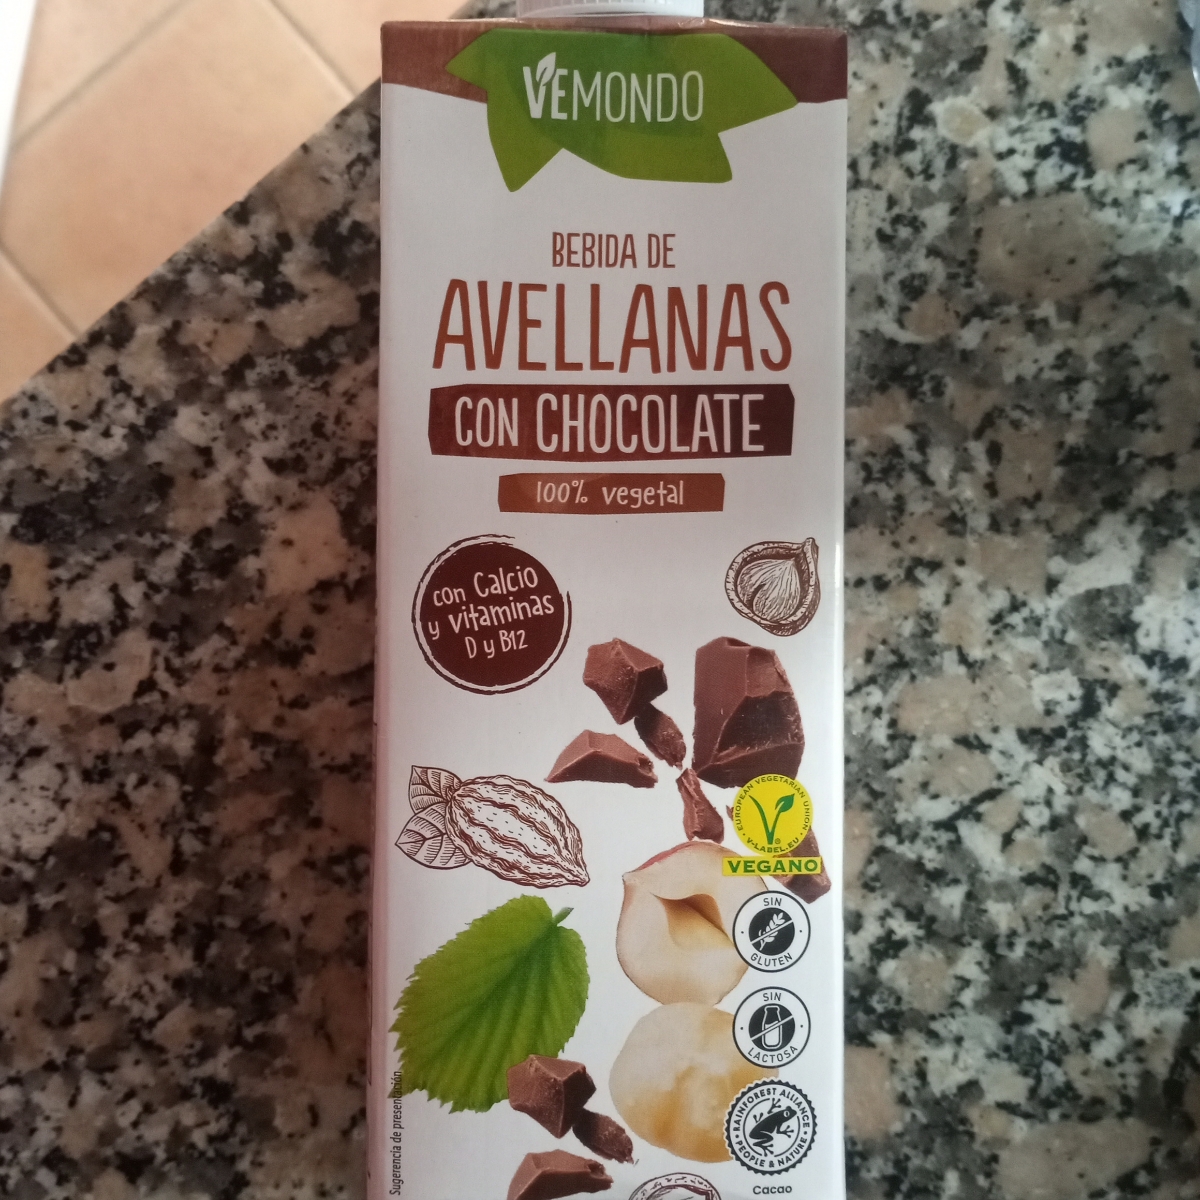 Vemondo Bebida de Avellanas Con Chocolate Reviews | abillion